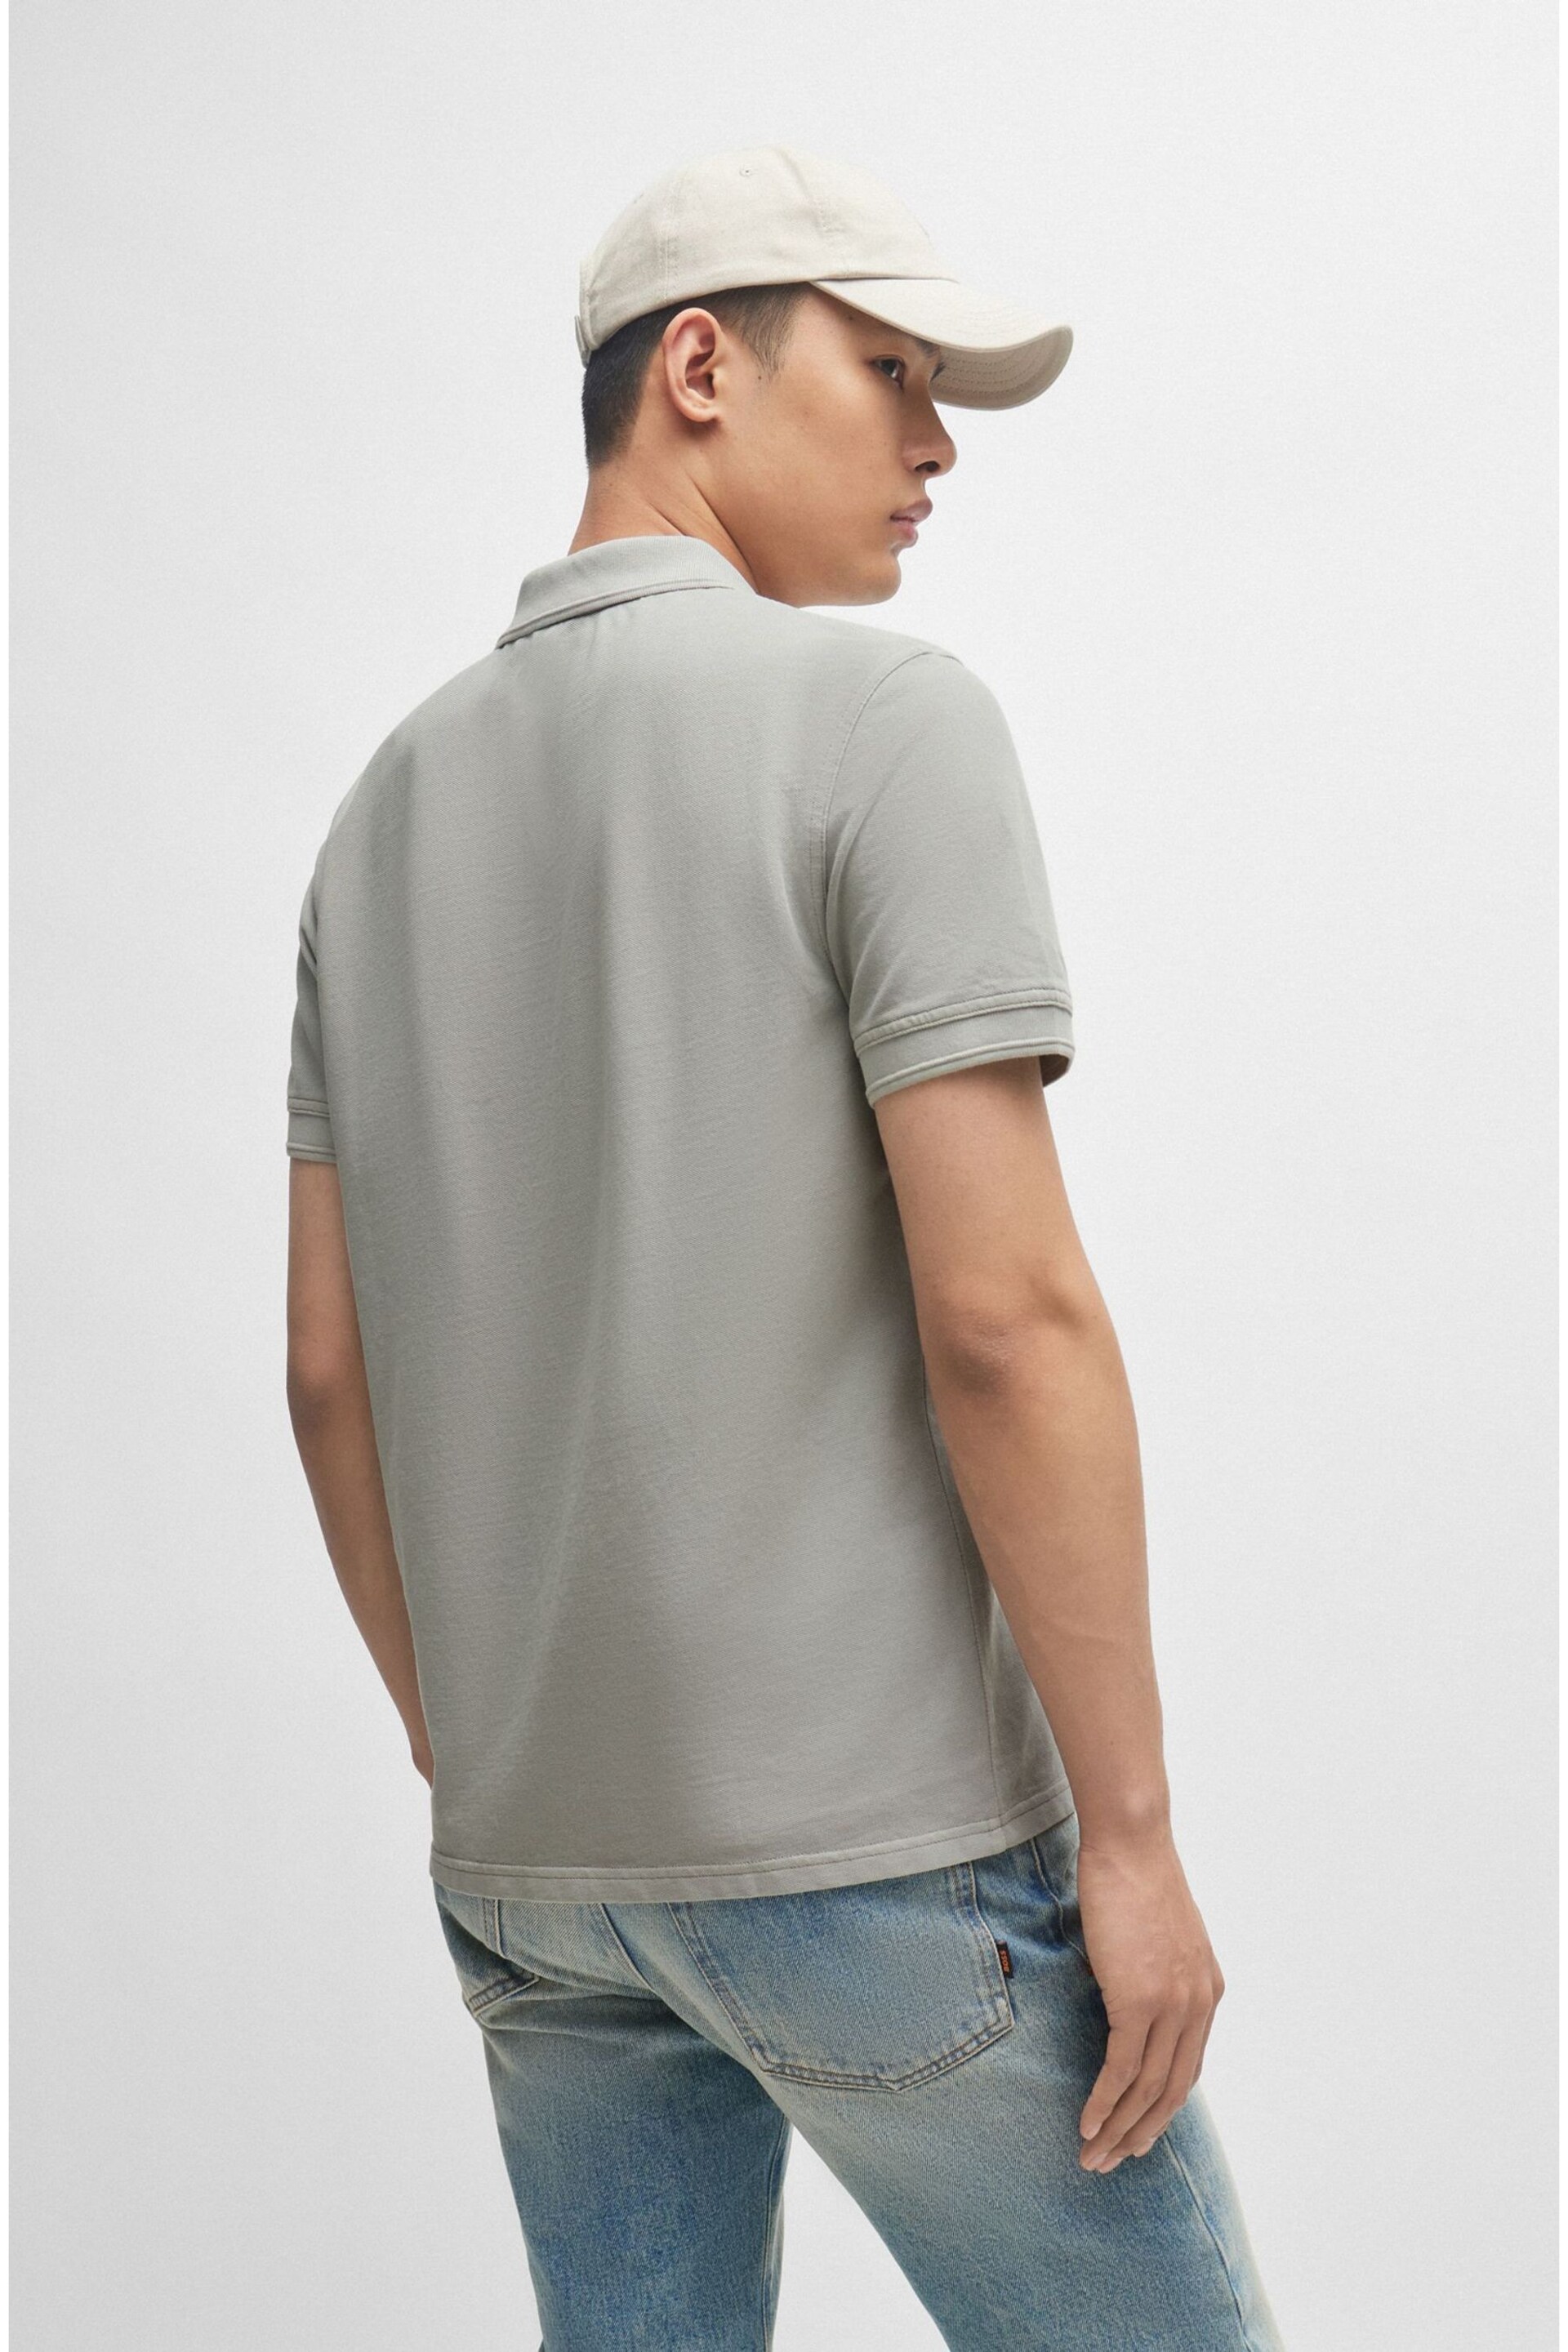 BOSS Grey Cotton Pique Polo Shirt - Image 2 of 5